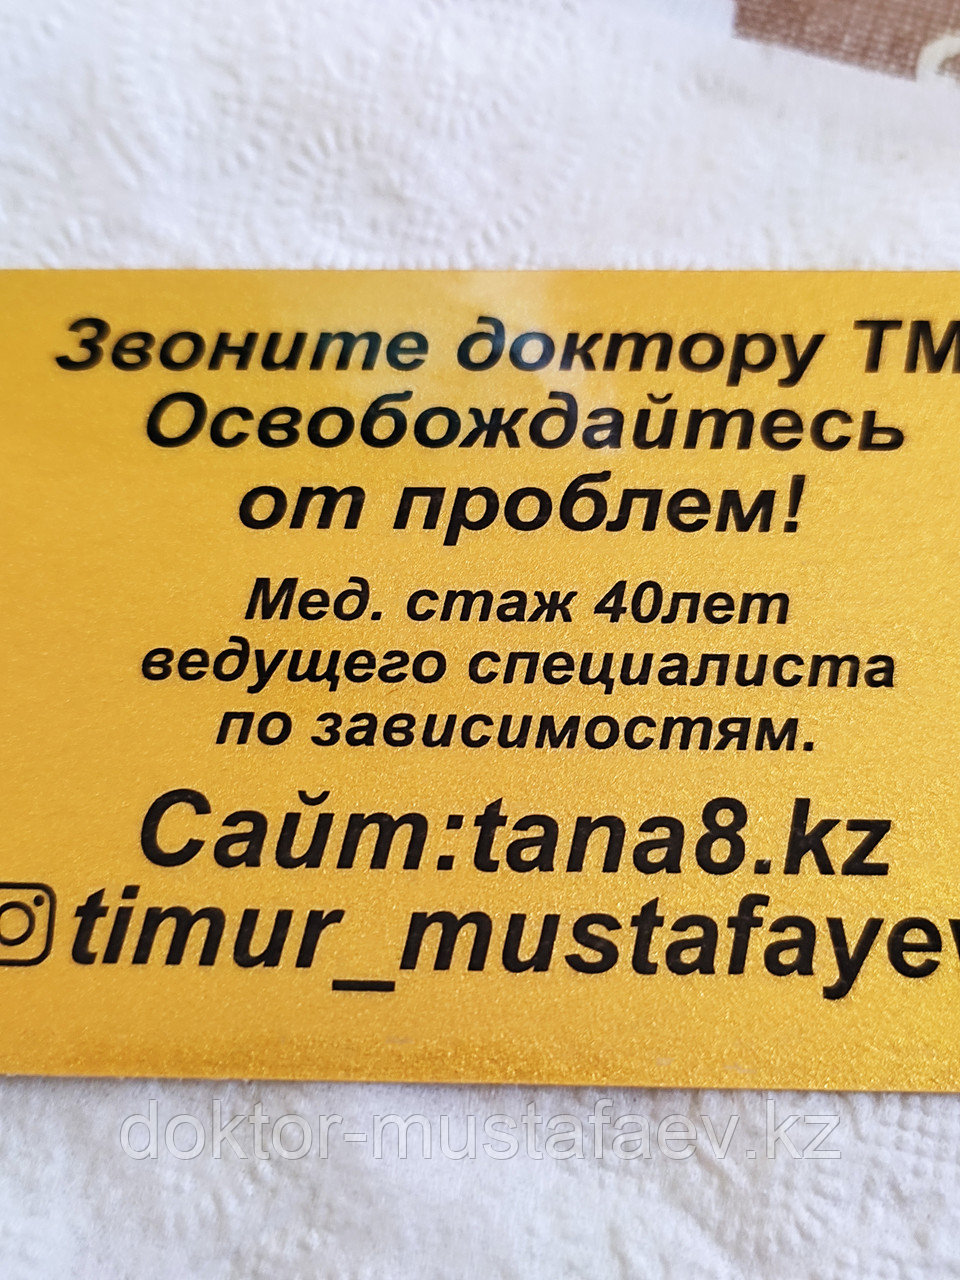 Помощь психолога, гипнотерапевта психотерапевта доктора Мустафаева, Алматы по удобной записи